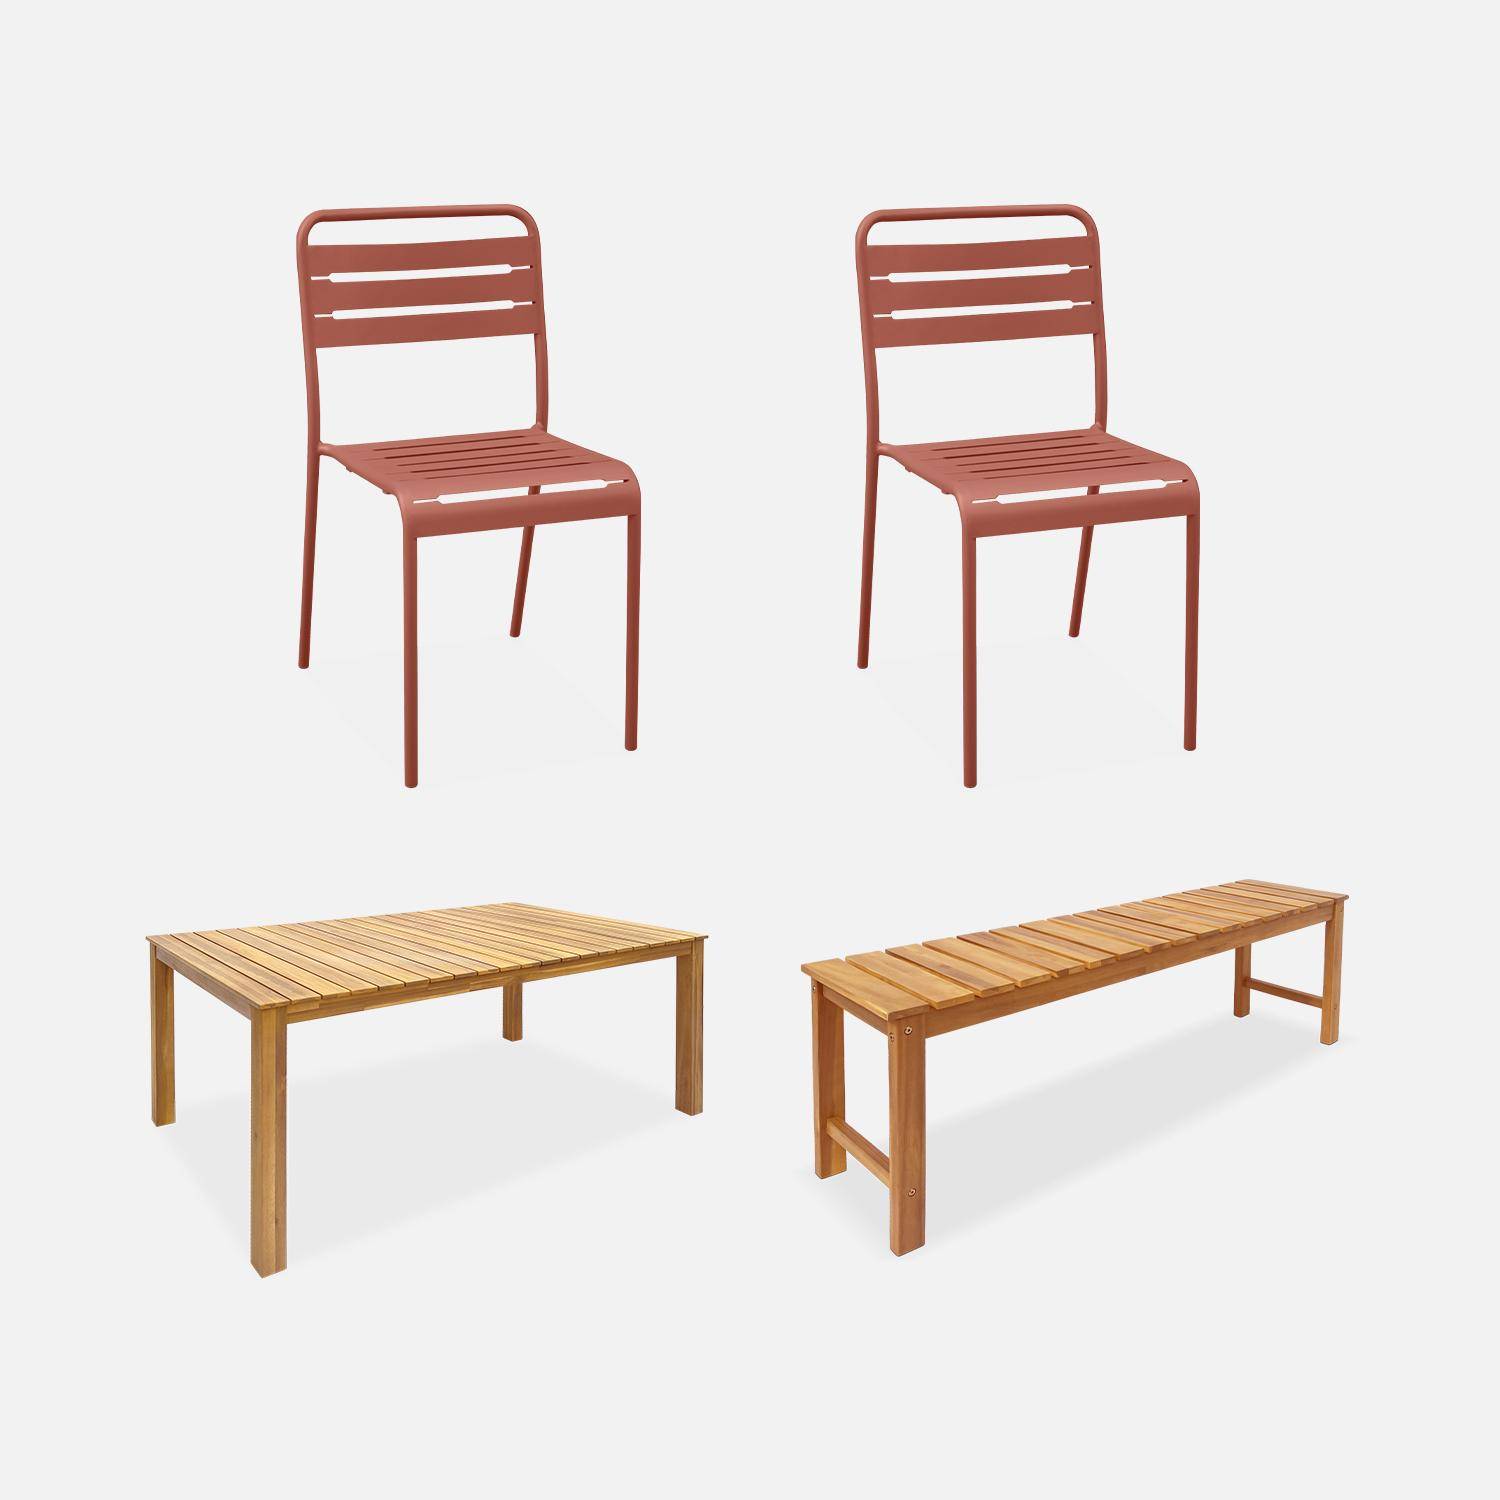 Table intérieur/extérieur en bois d'acacia clair 160cm + 2 bancs + 2 chaises en acier terracotta Photo1